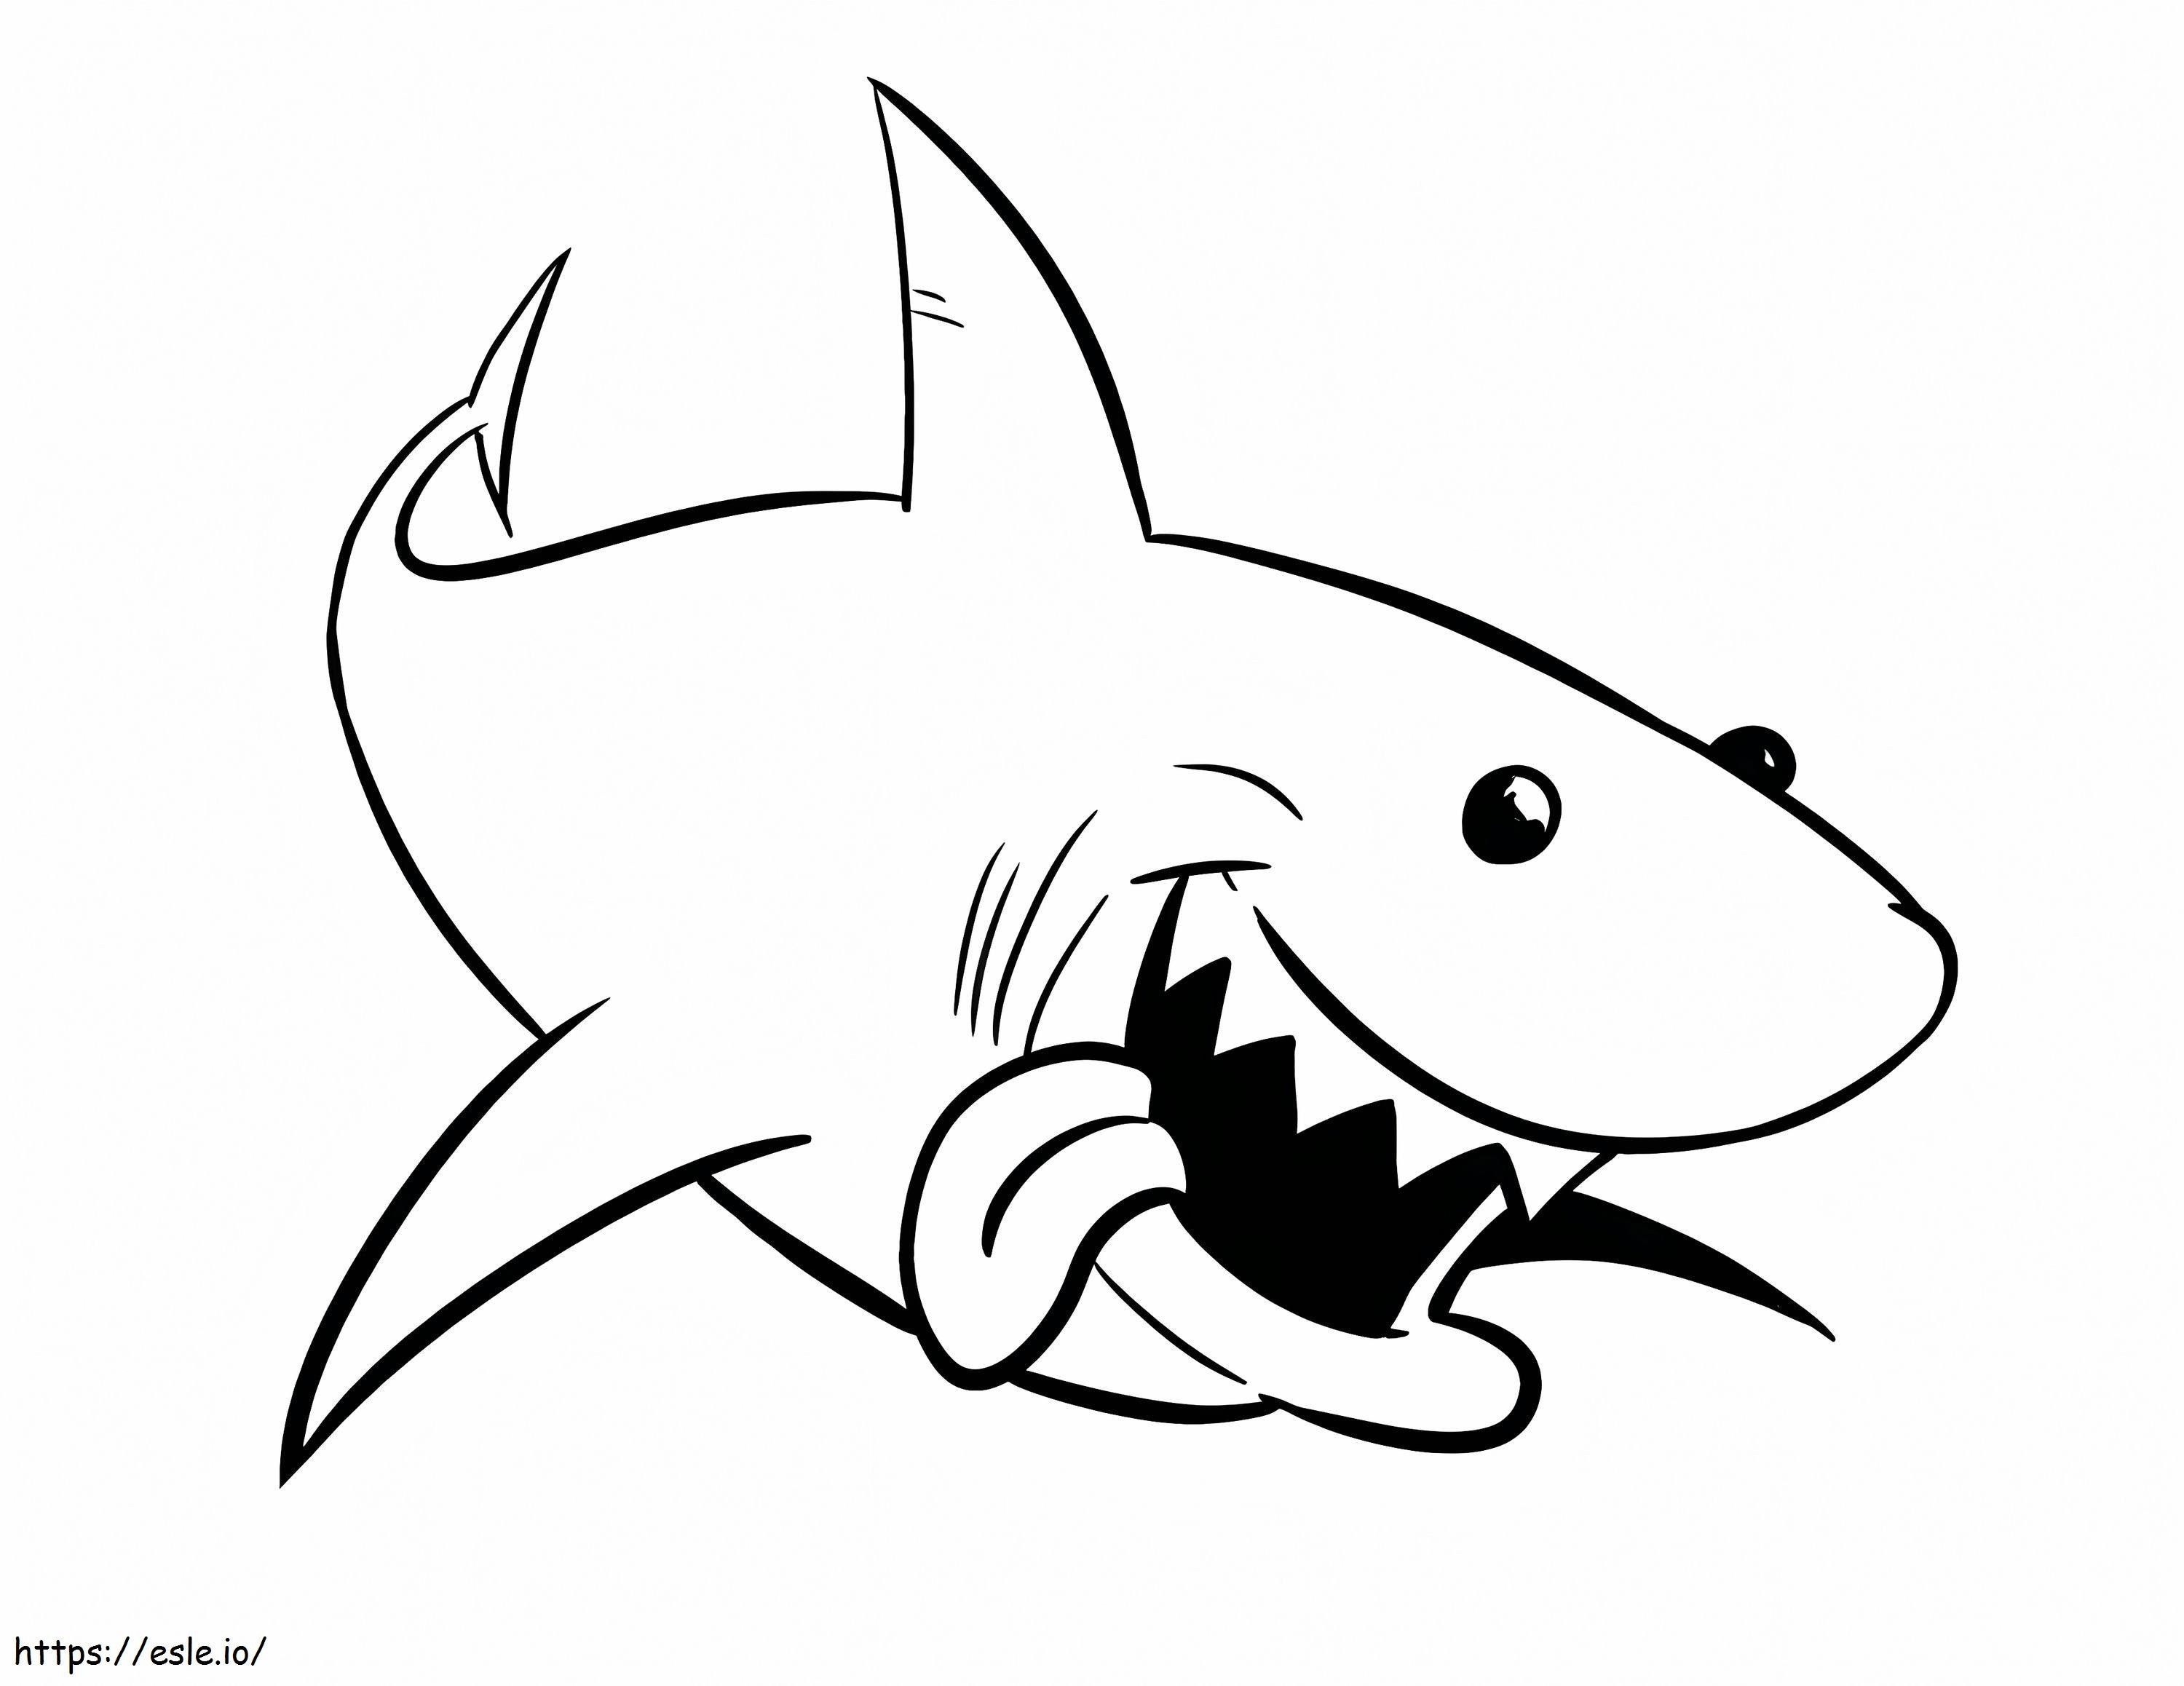 1541378982 Komple D792570 Boğa Köpekbalığı Büyük Beyaz Köpekbalığı Yeni Boğa Köpekbalığı Çizimi Büyük Beyaz Köpekbalığı Boyama Antika Boğa Köpekbalığı Boyama Resimleri boyama